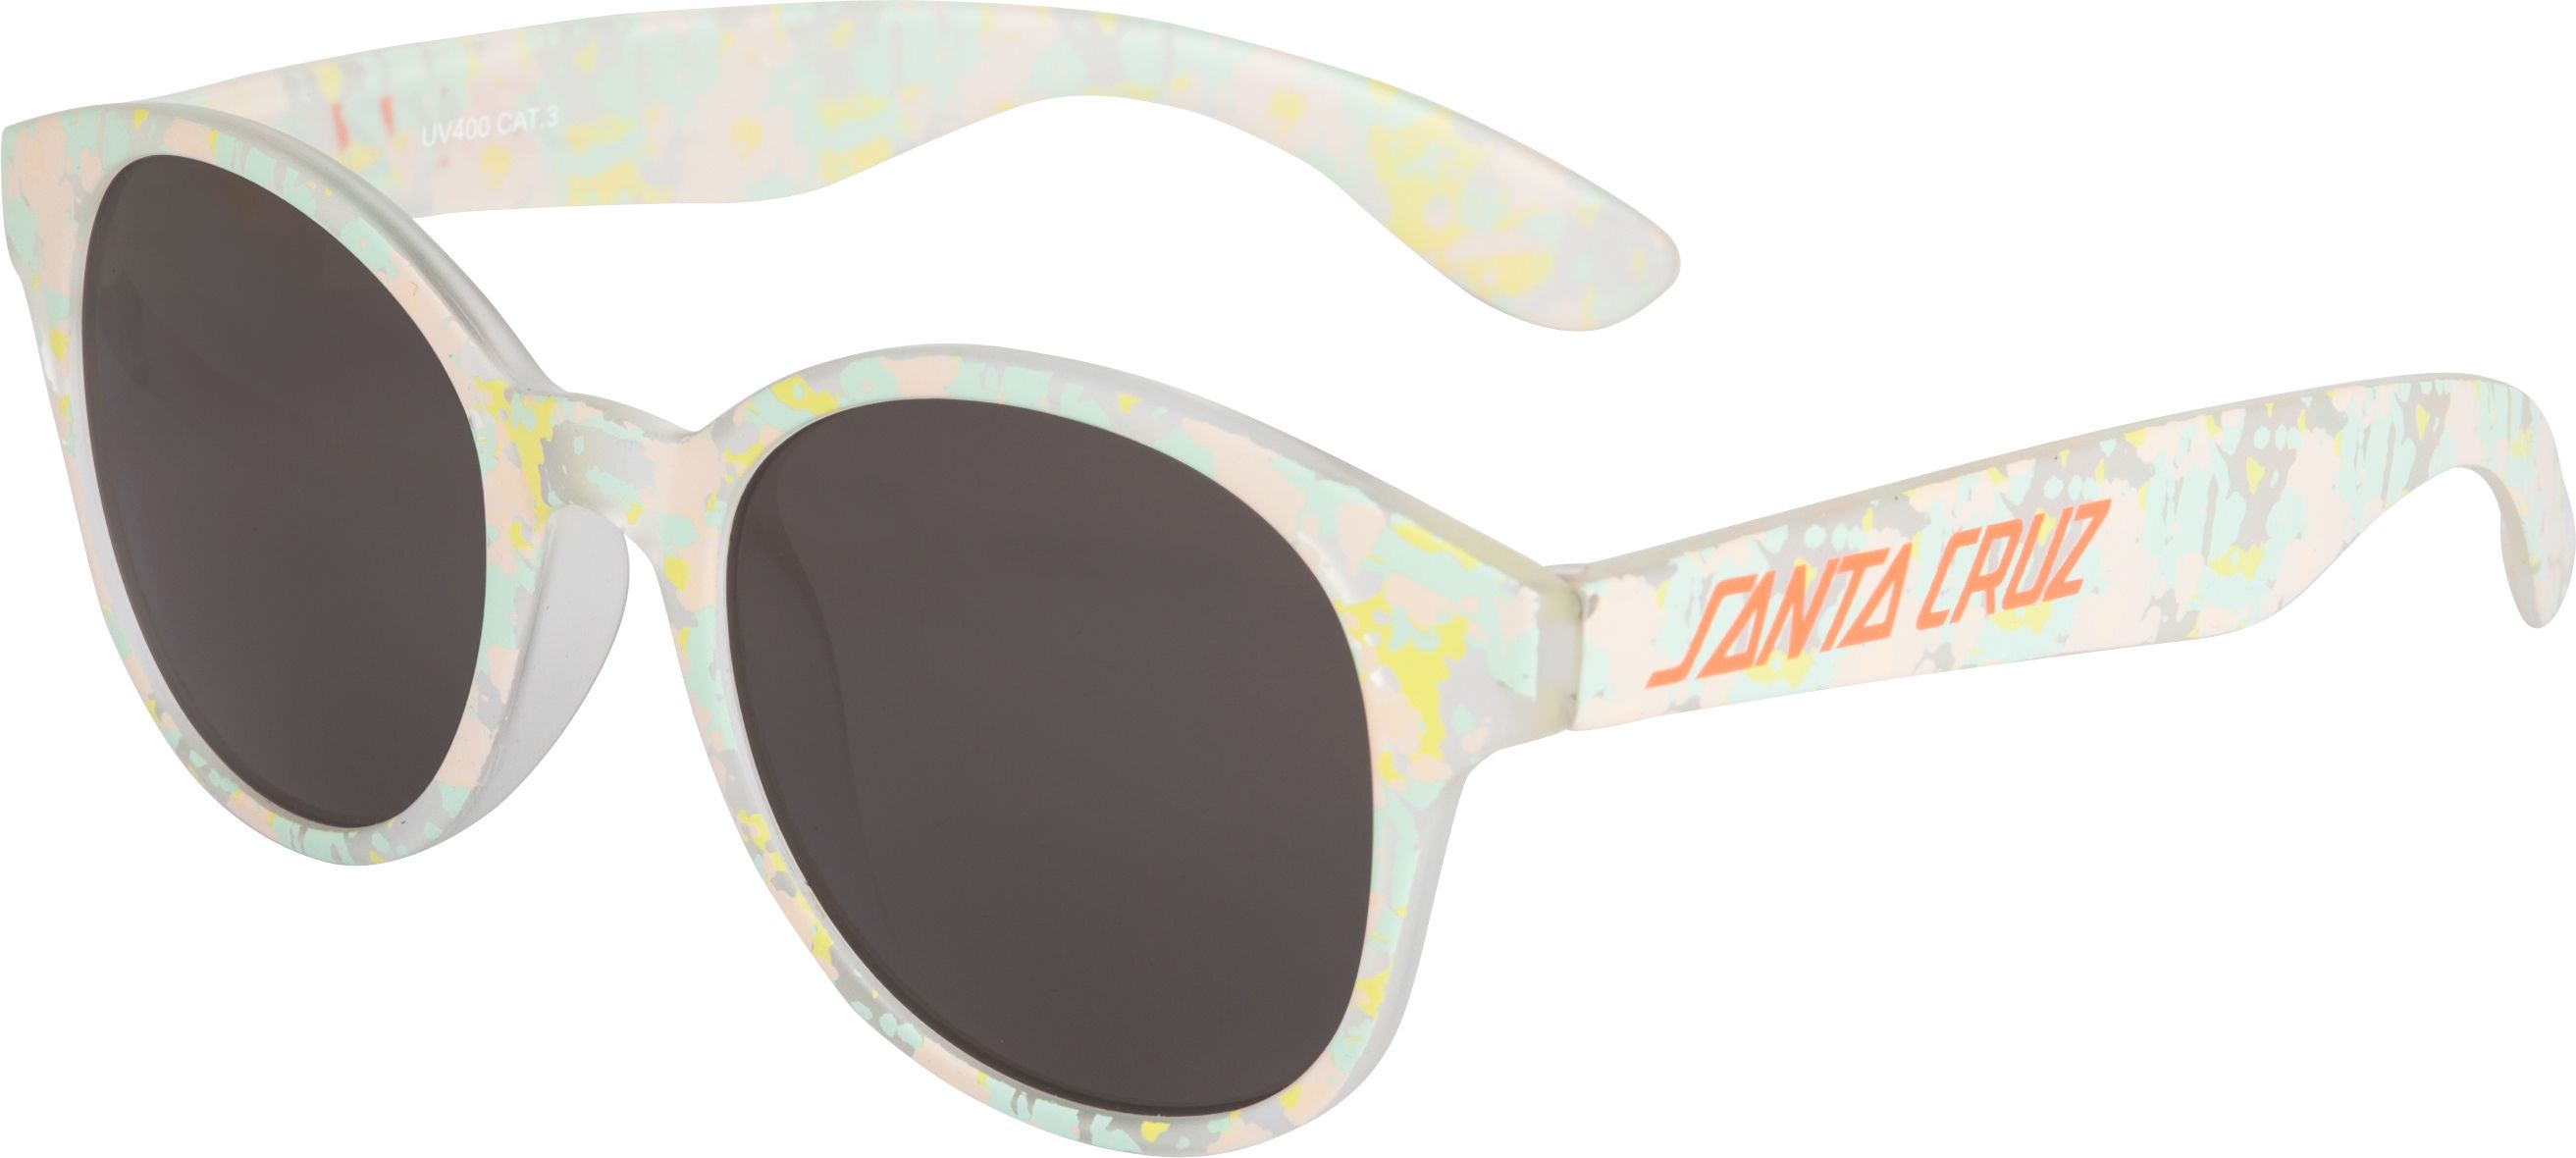 dámské sluneční brýle SANTA CRUZ TIE-DYE STRIP SUNGLASSES Coral/Jade Tie-Dye